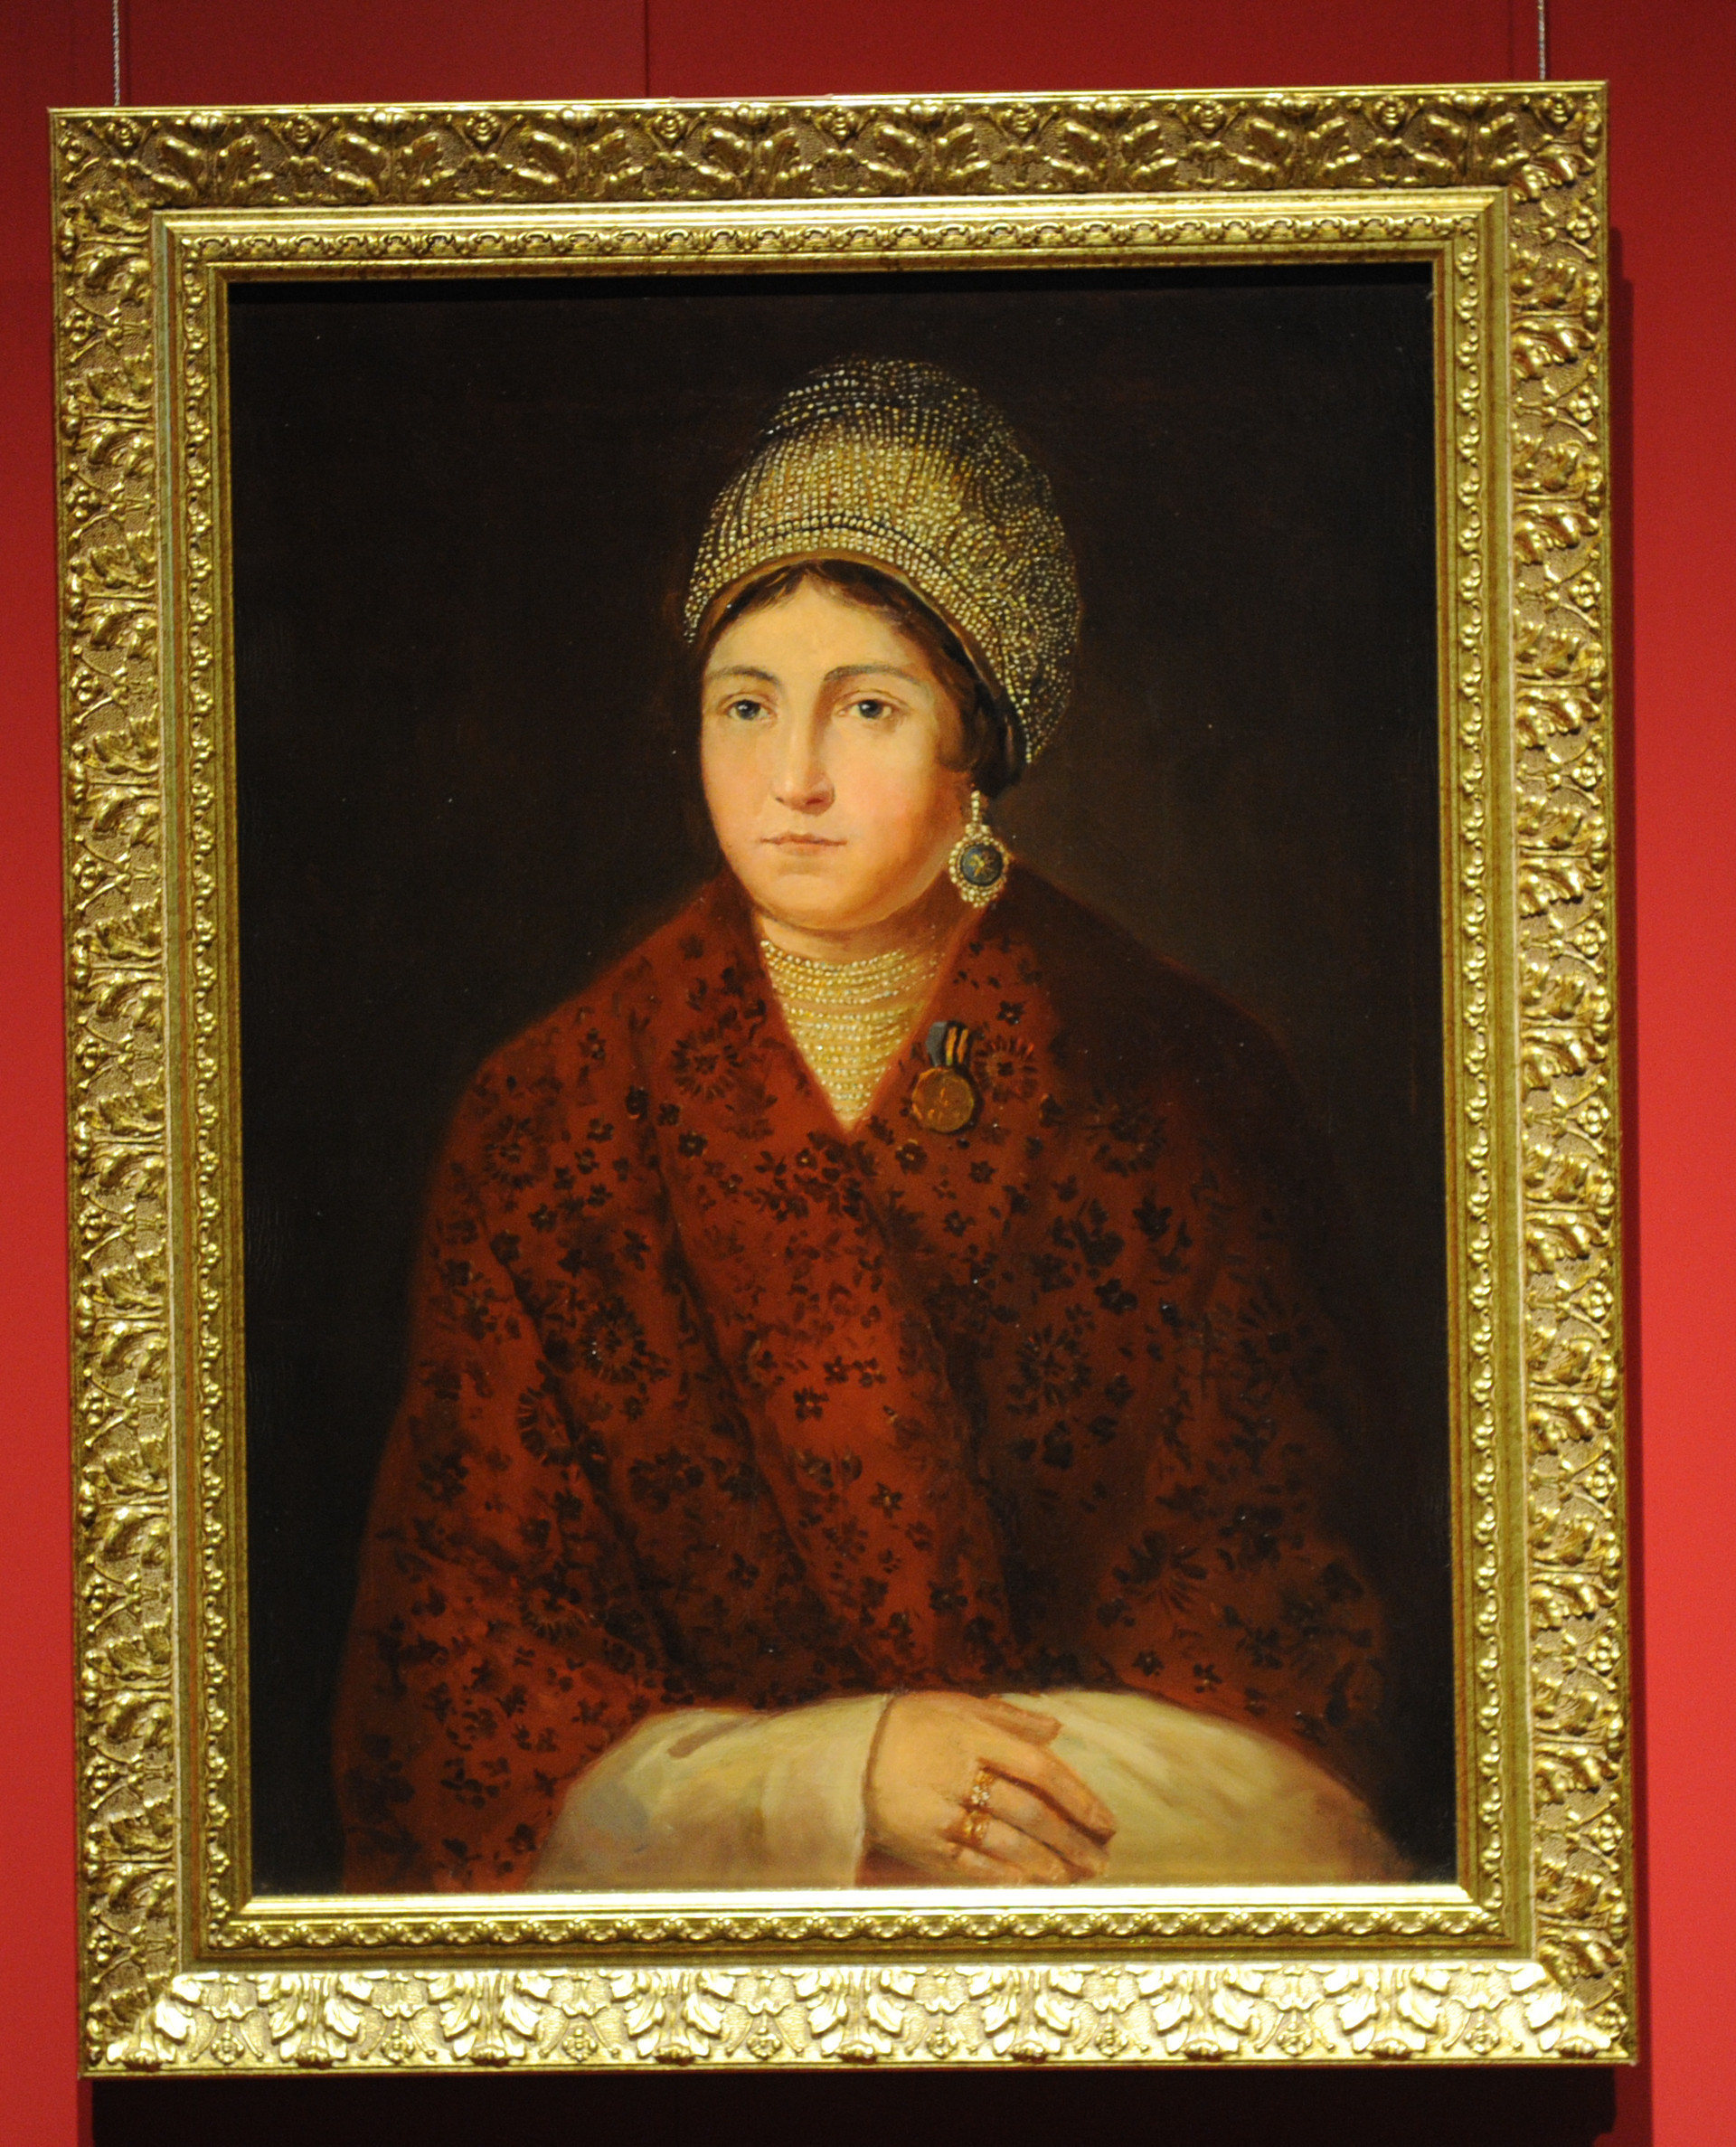 Portret Vasilise Kožine, kopija Stanislava Loča iz 1959. godine po originalu A.F. Smirnova iz 1813.